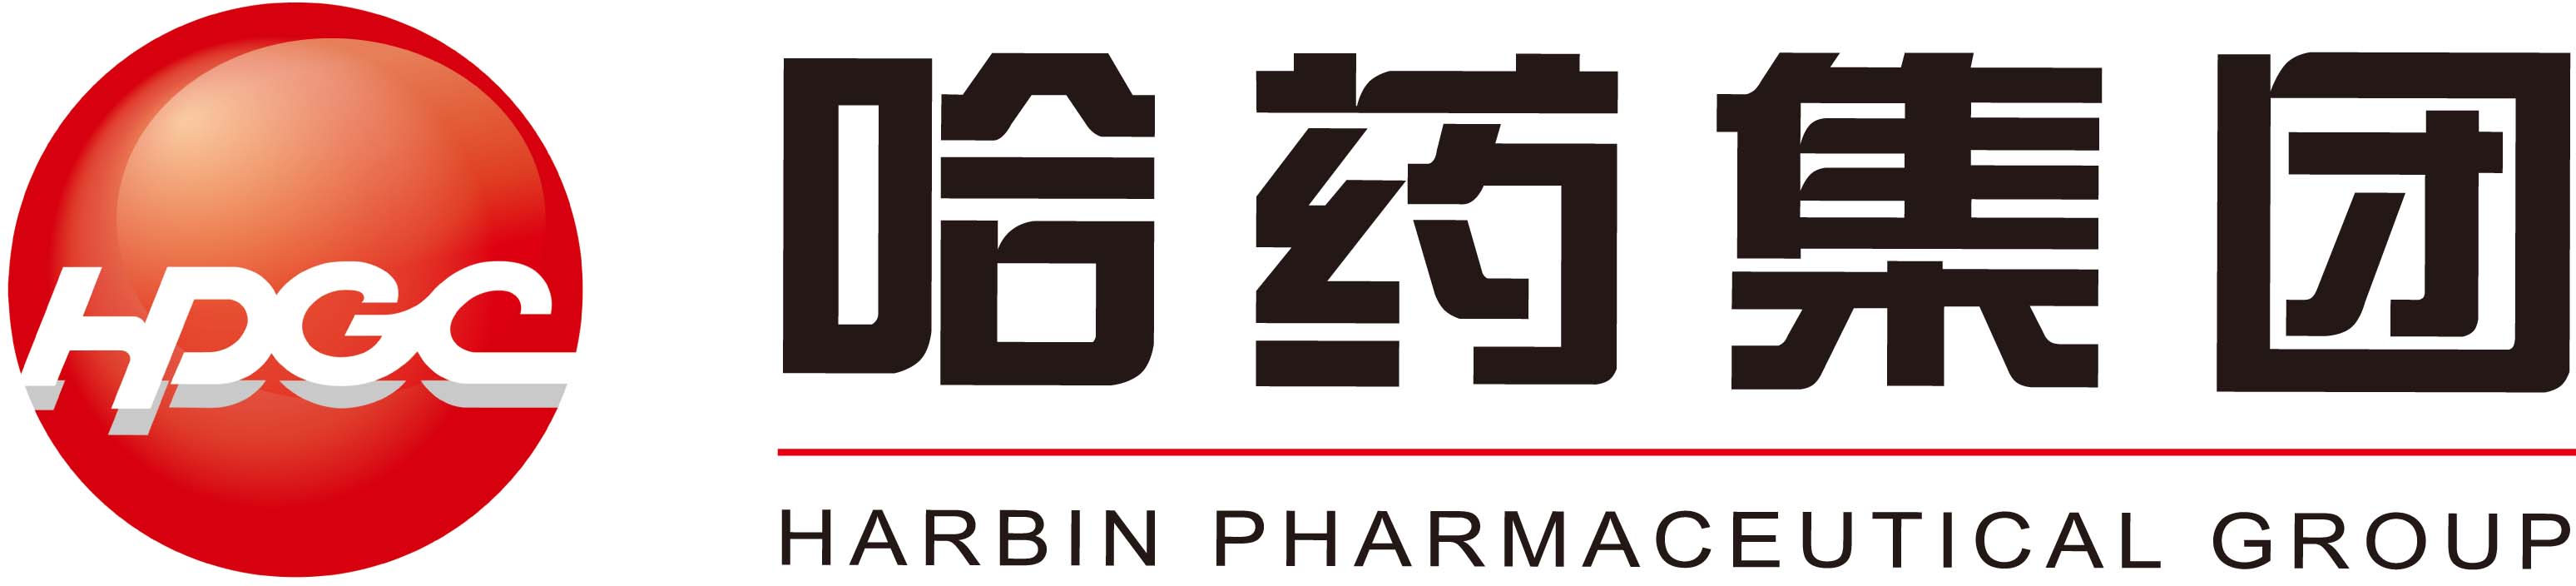 Harbin Pharmaceutical Brand Logo